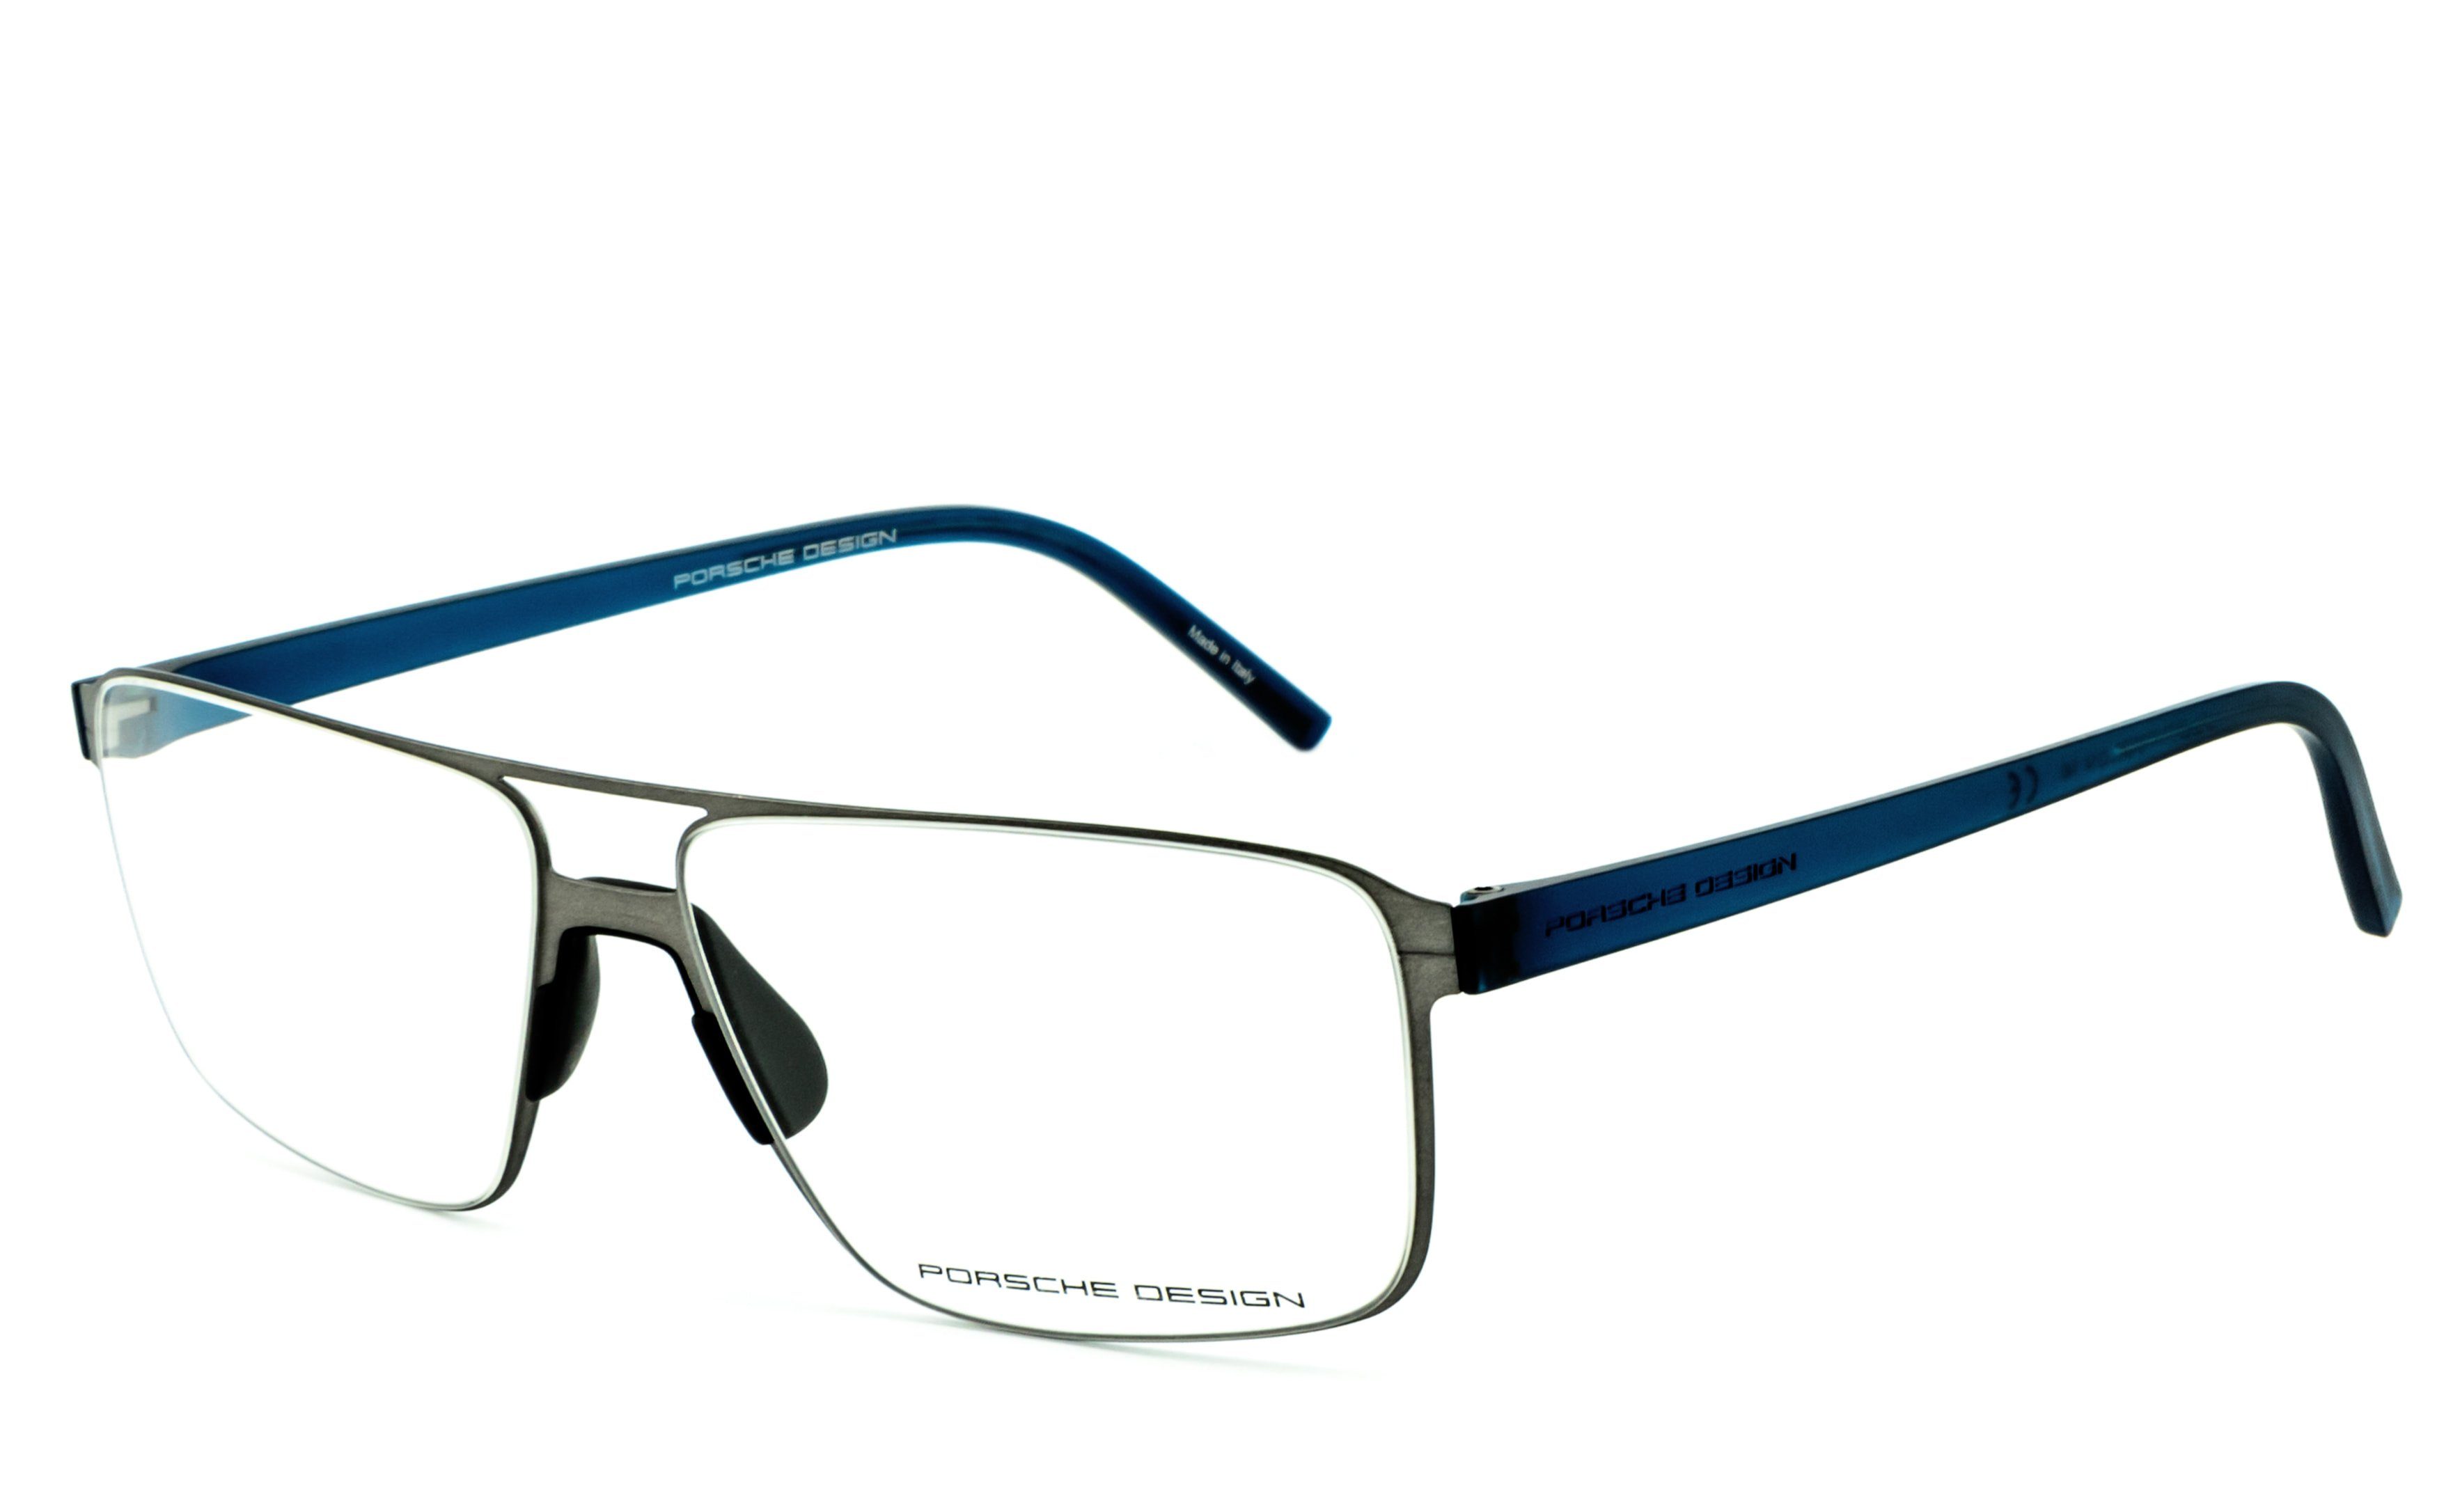 Sehstärke Bildschirmbrille, Blaulichtfilter Blaulicht Brille Bürobrille, ohne Gamingbrille, Brille, Design Brille, PORSCHE